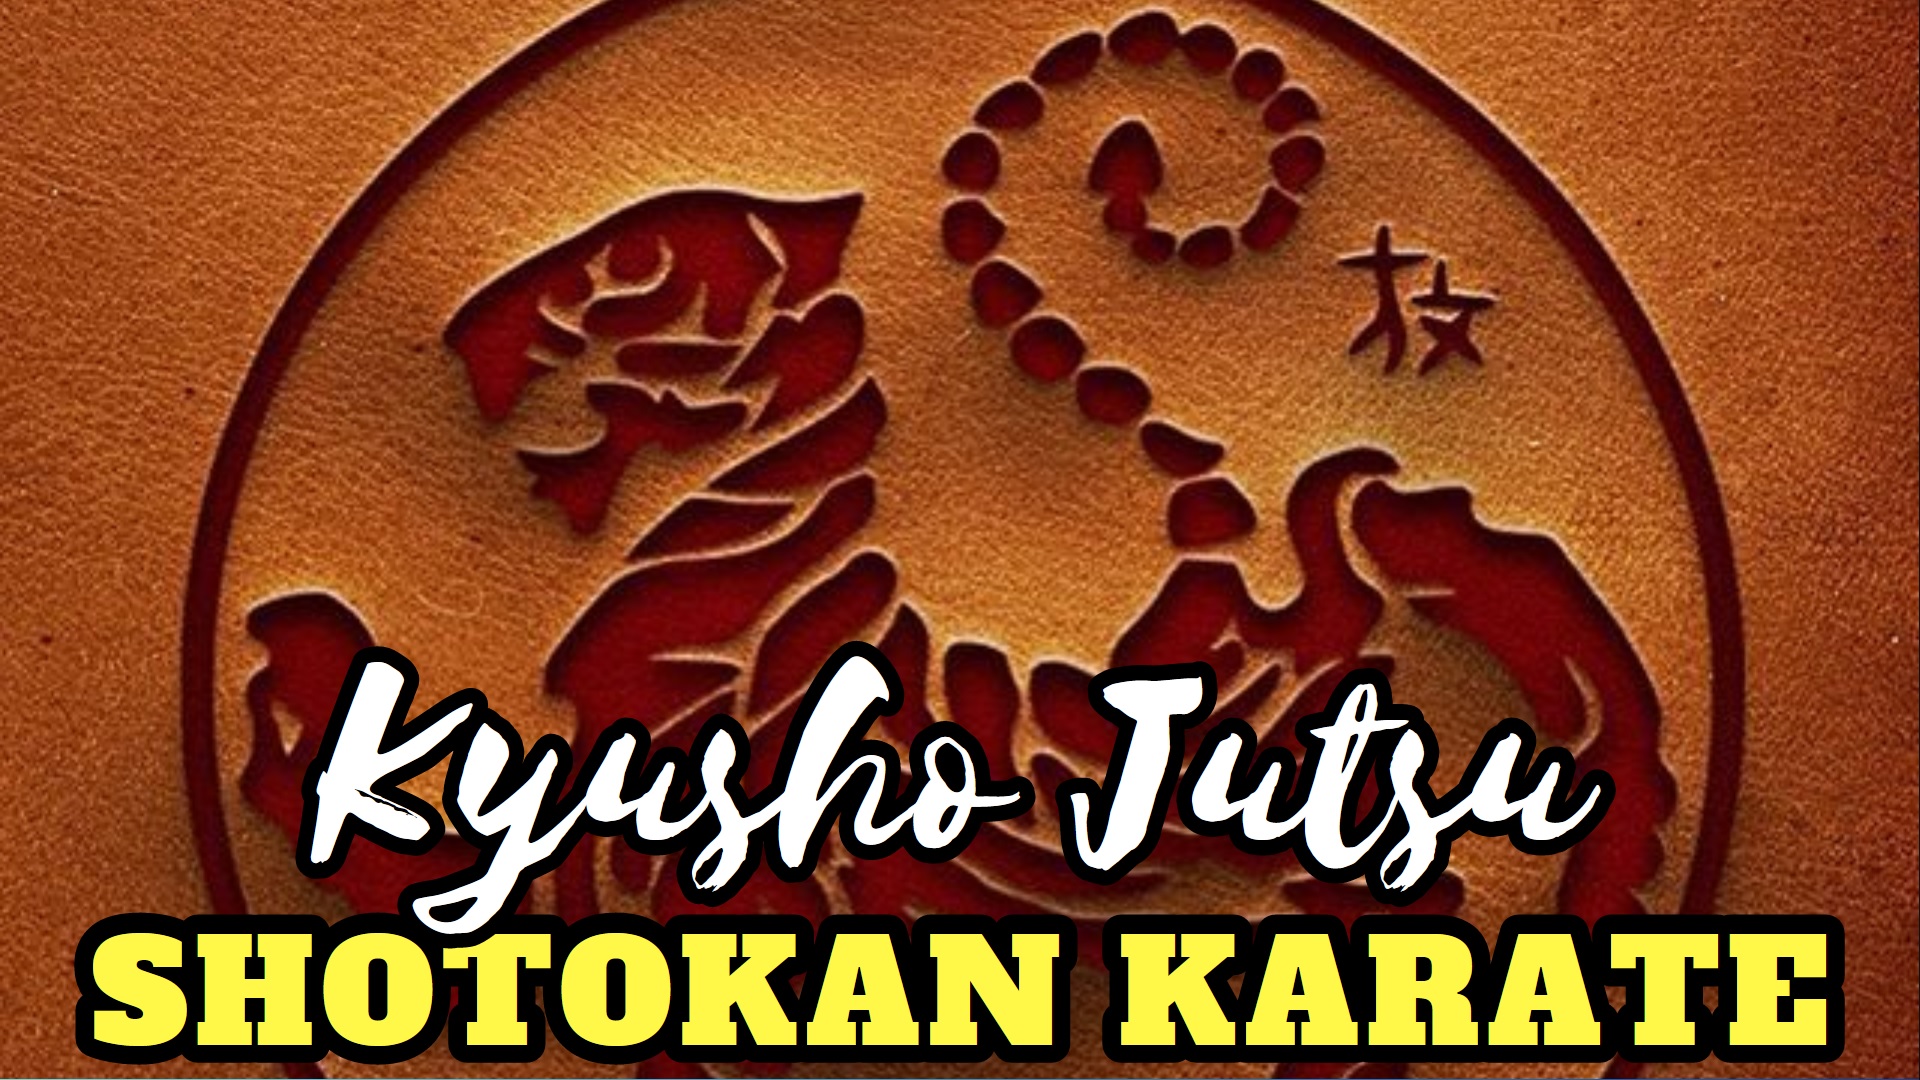 Adding Kyusho Jutsu to Shotokan Karate